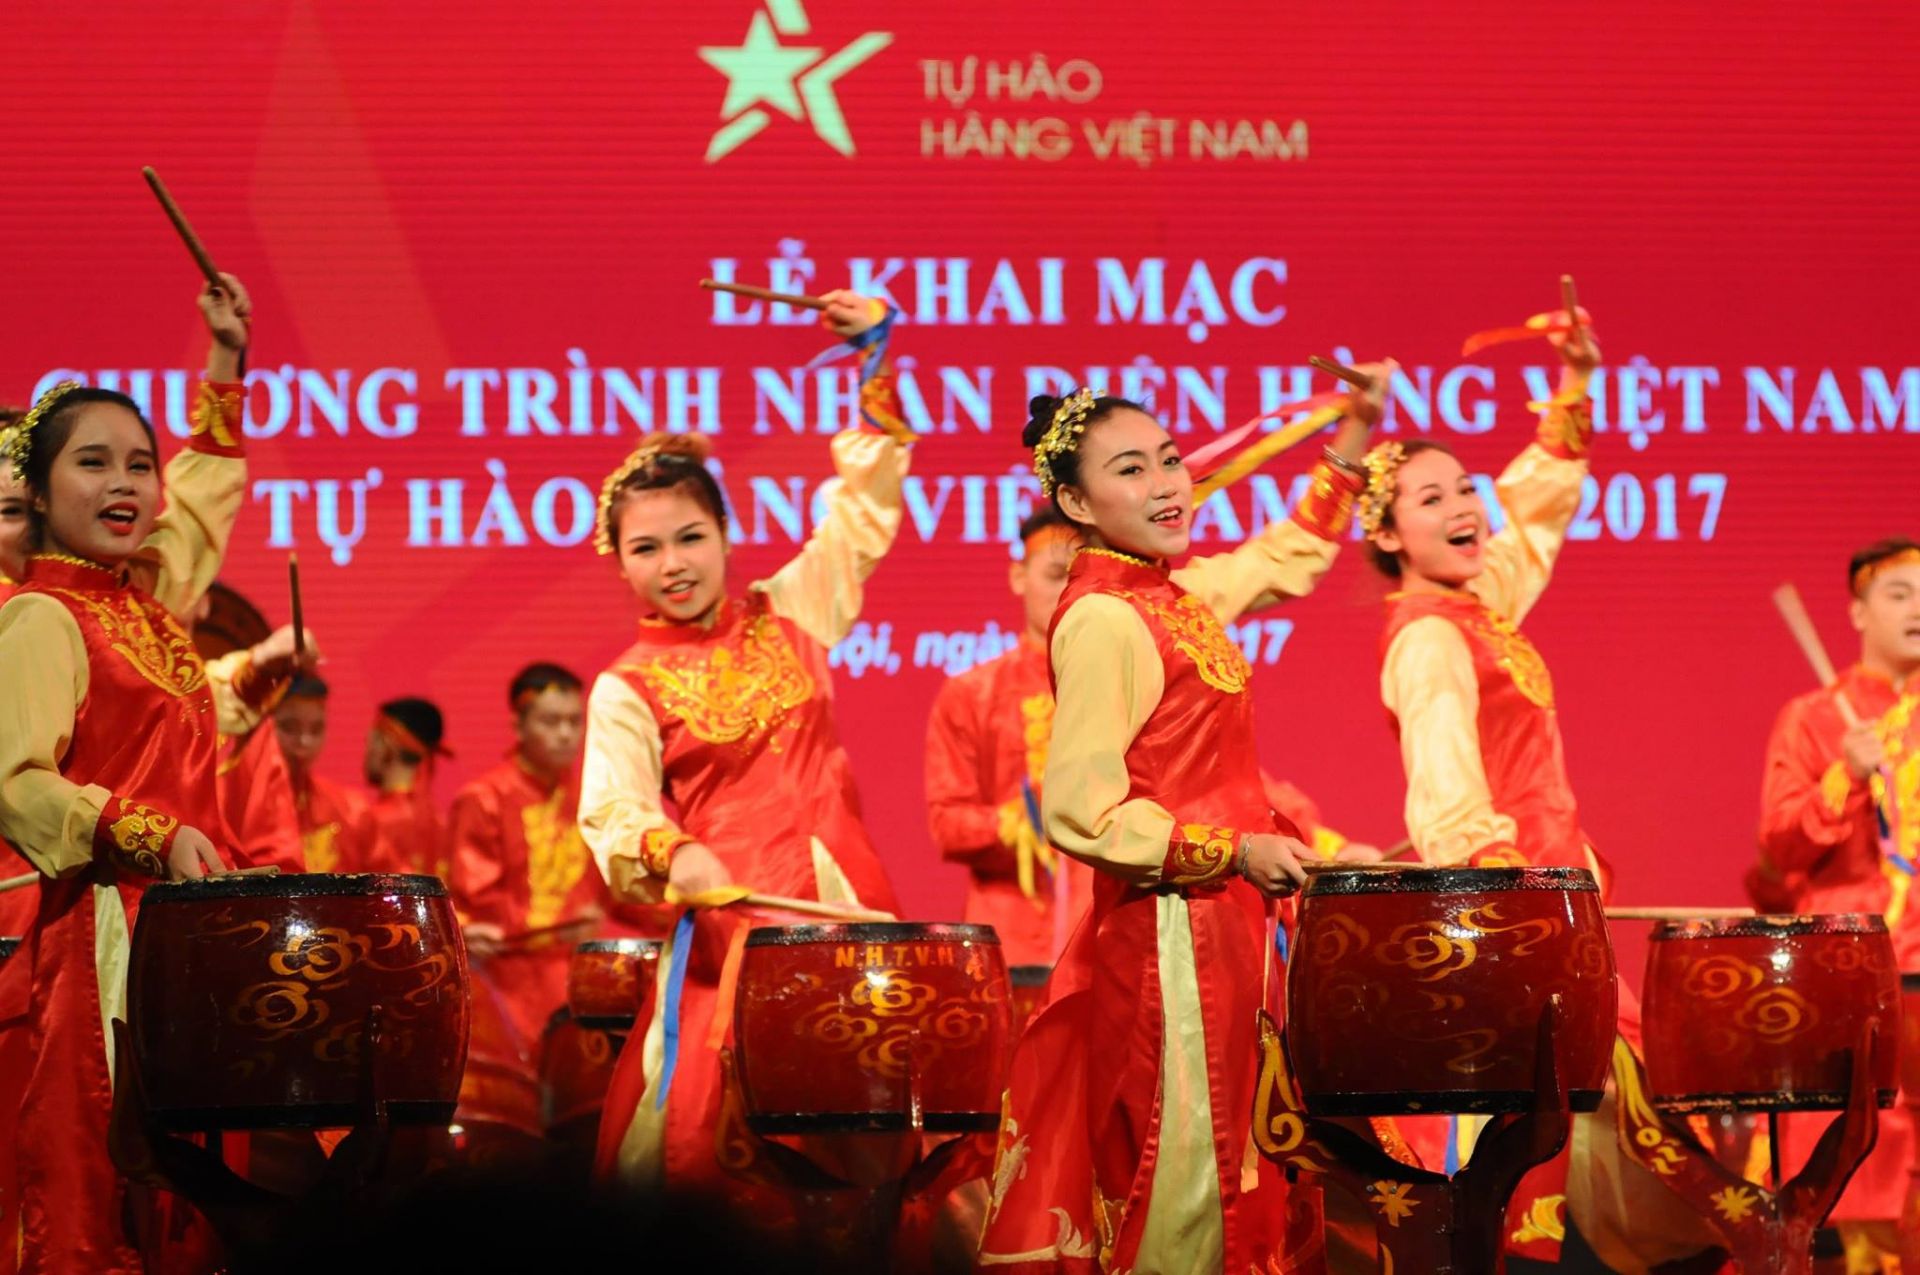 Nghi thức trống hội sôi động, náo nhiệt sẽ mở đầu Lễ Khai mạc Chương trình Nhận diện hàng Việt Nam năm 2022 và Lễ hội Tự hào hàng Việt Nam - Tinh hoa hàng Việt Nam